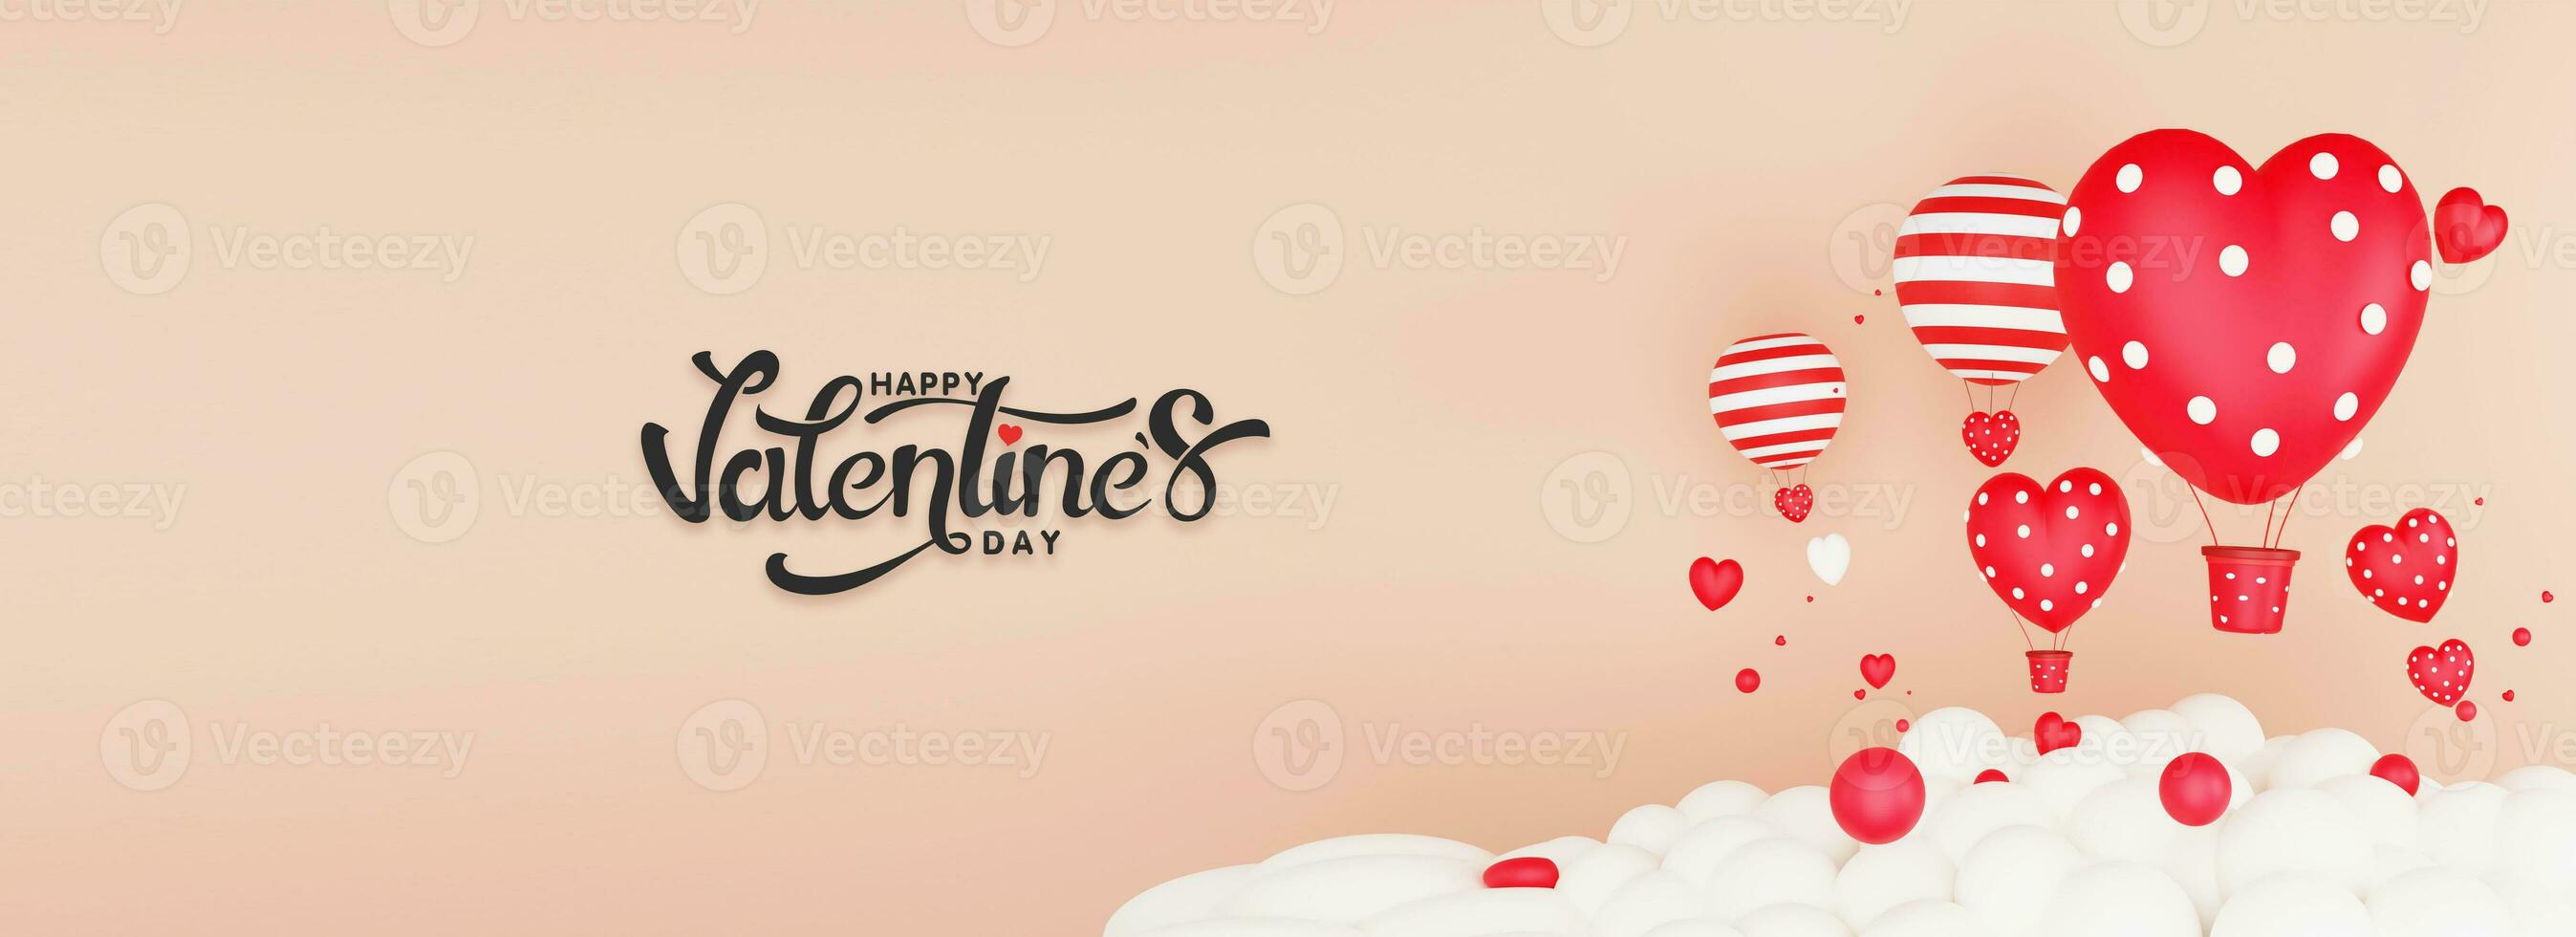 contento San Valentín día encabezamiento o bandera diseño con 3d prestar, corazón formas, caliente aire globos y nubes foto